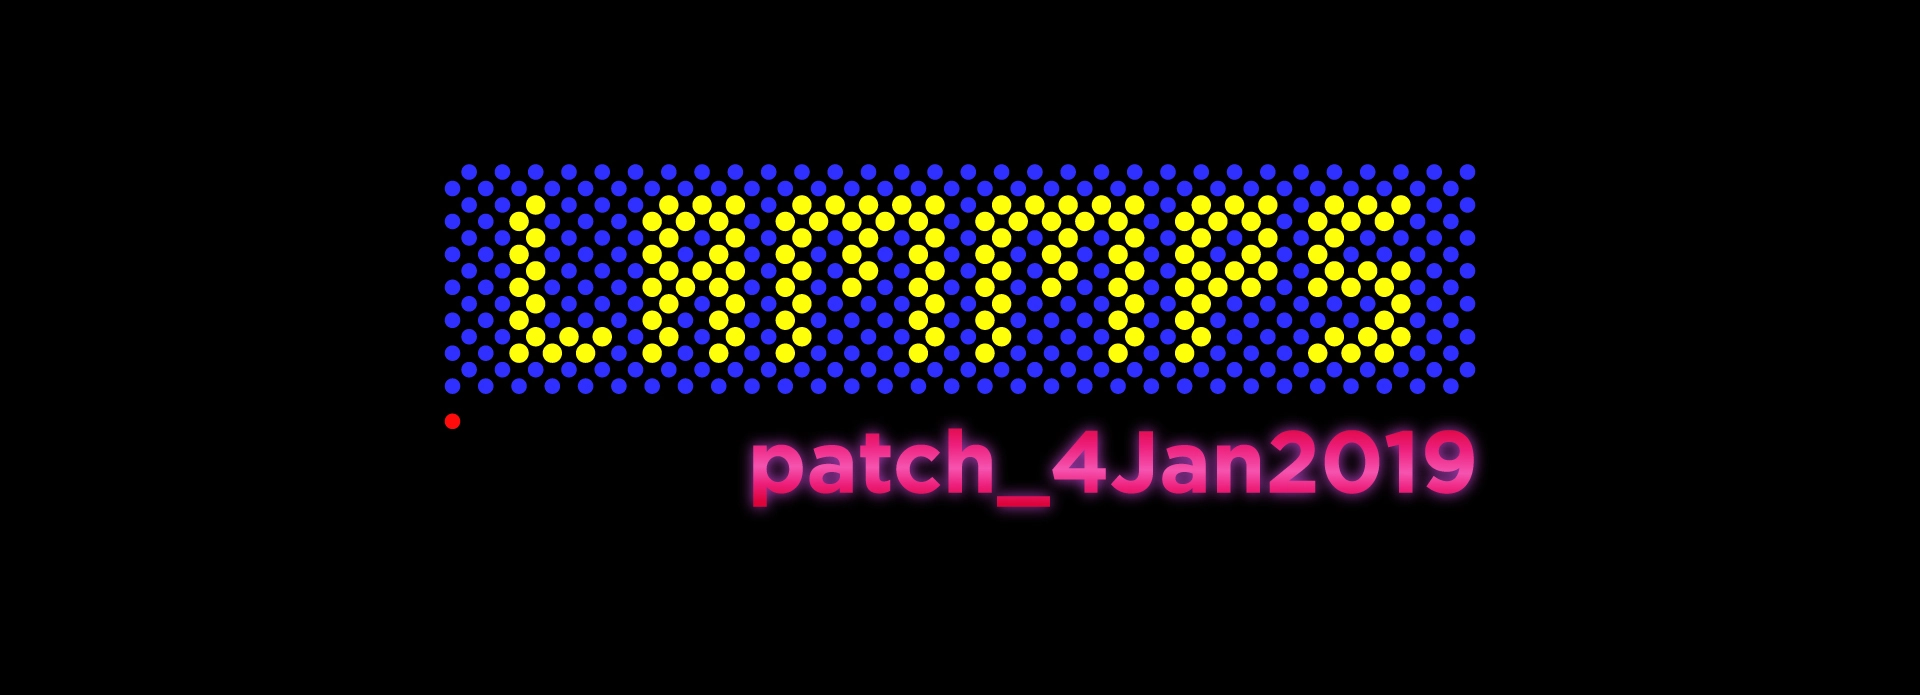 LAMMPS-patch-Jan4-2019.jpg